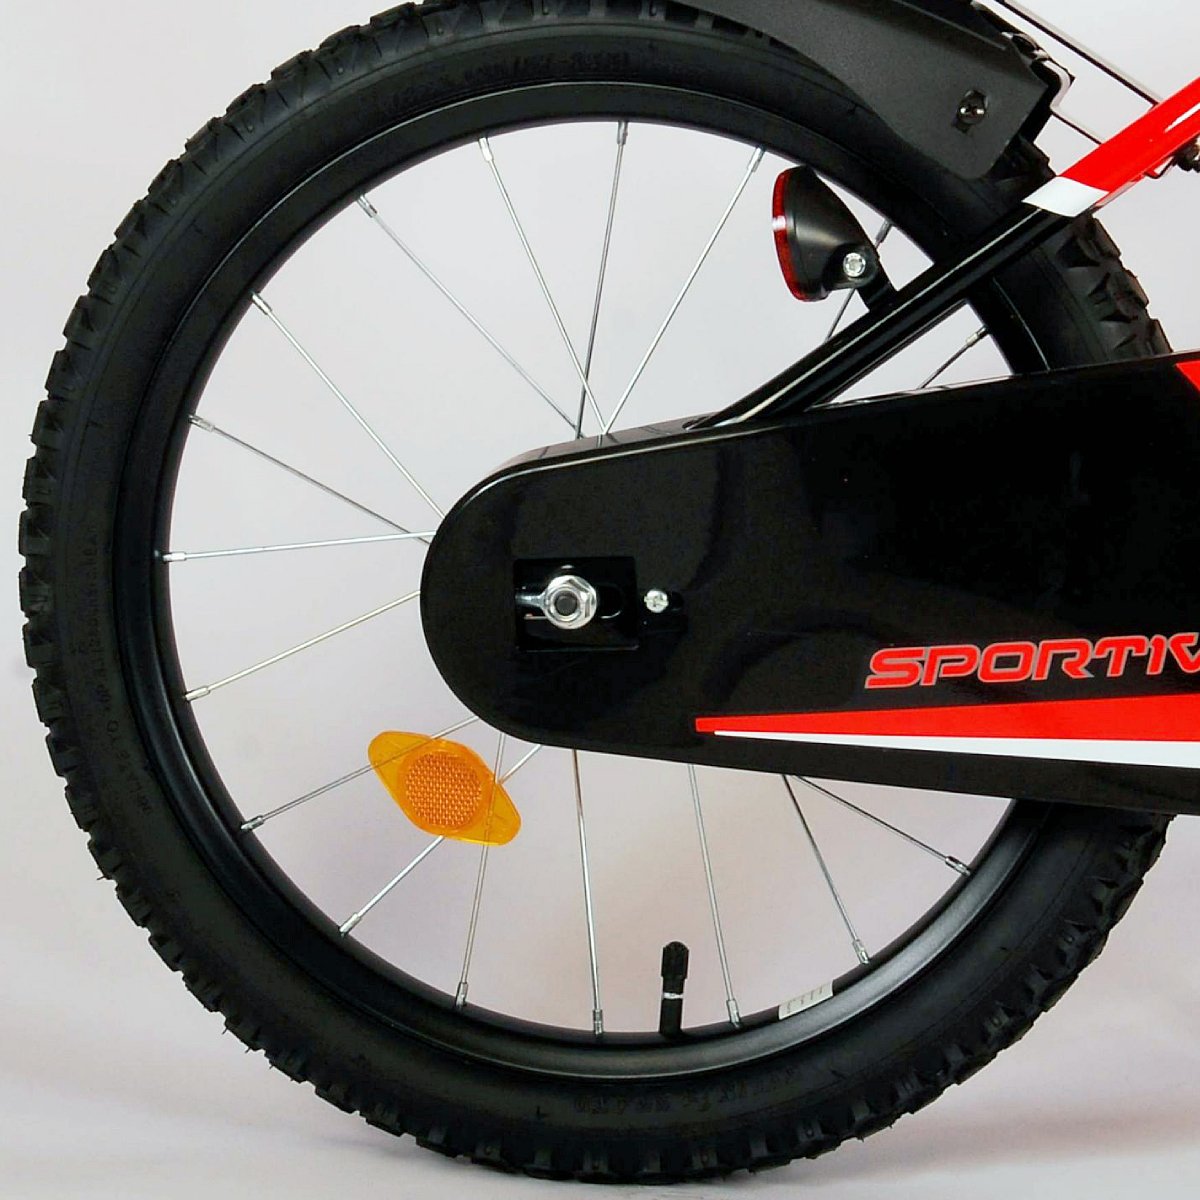 Vaikiškas dviratis VOLARE Sportivo, 18 dydis, juodas/oranžinis - 5